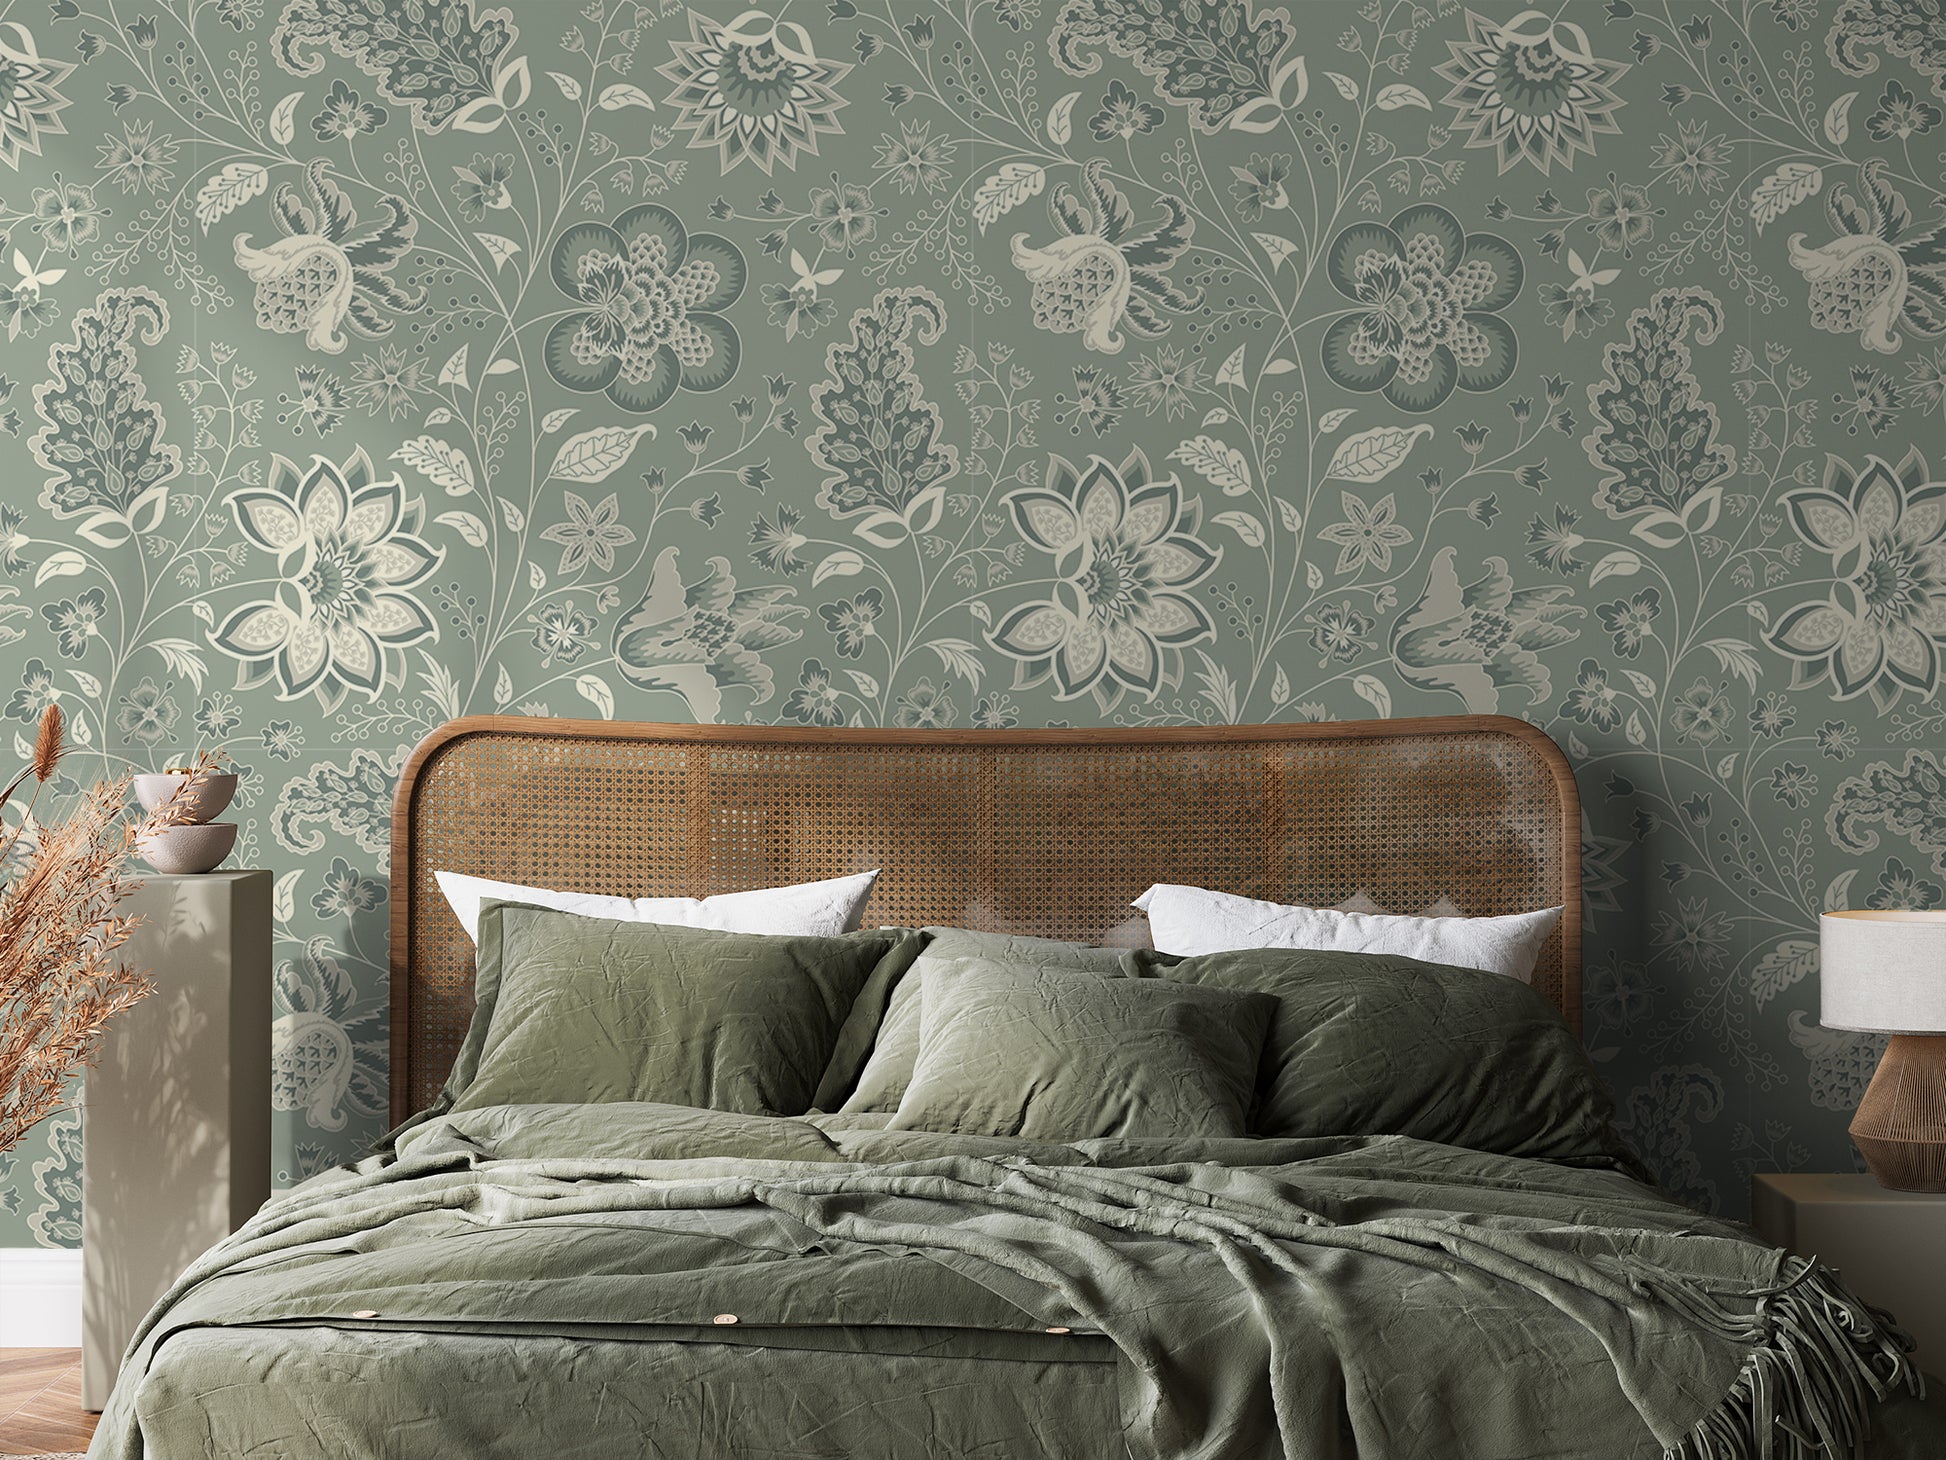 Azalea Wallpaper In Green Bedroom and Bed